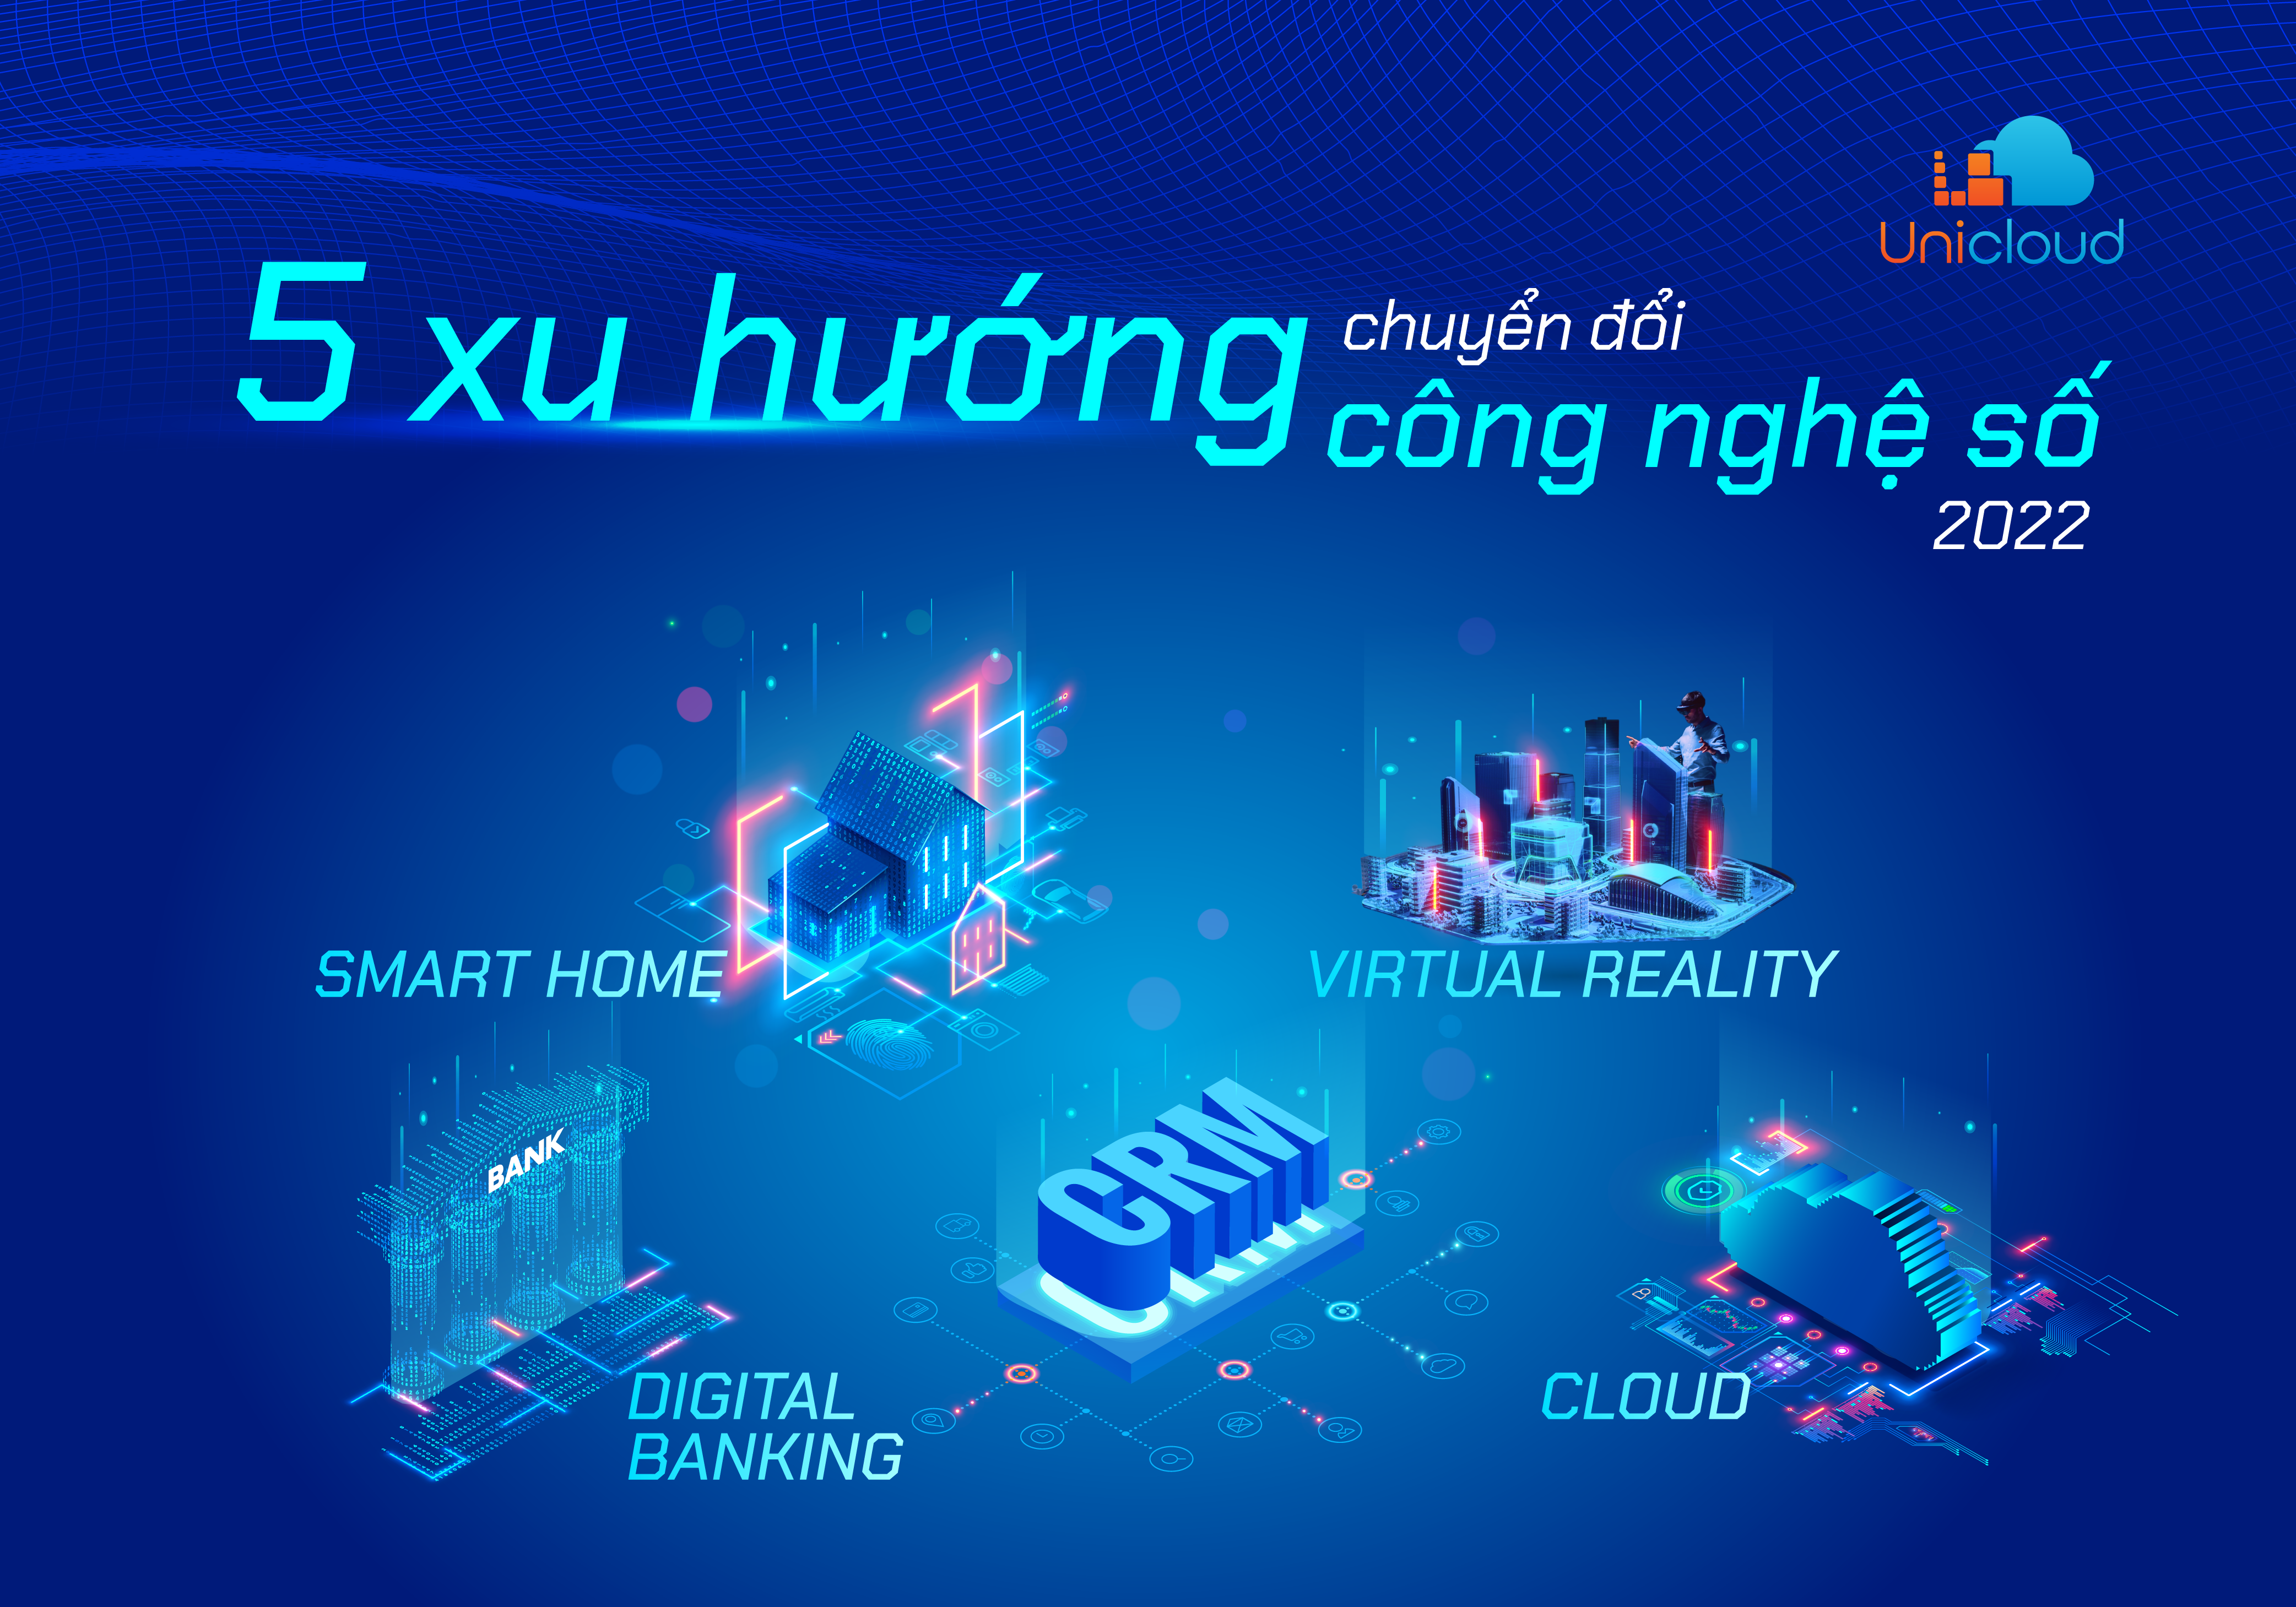 5 xu hướng chuyển đổi công nghệ số nổi bật năm 2022 tại Việt Nam